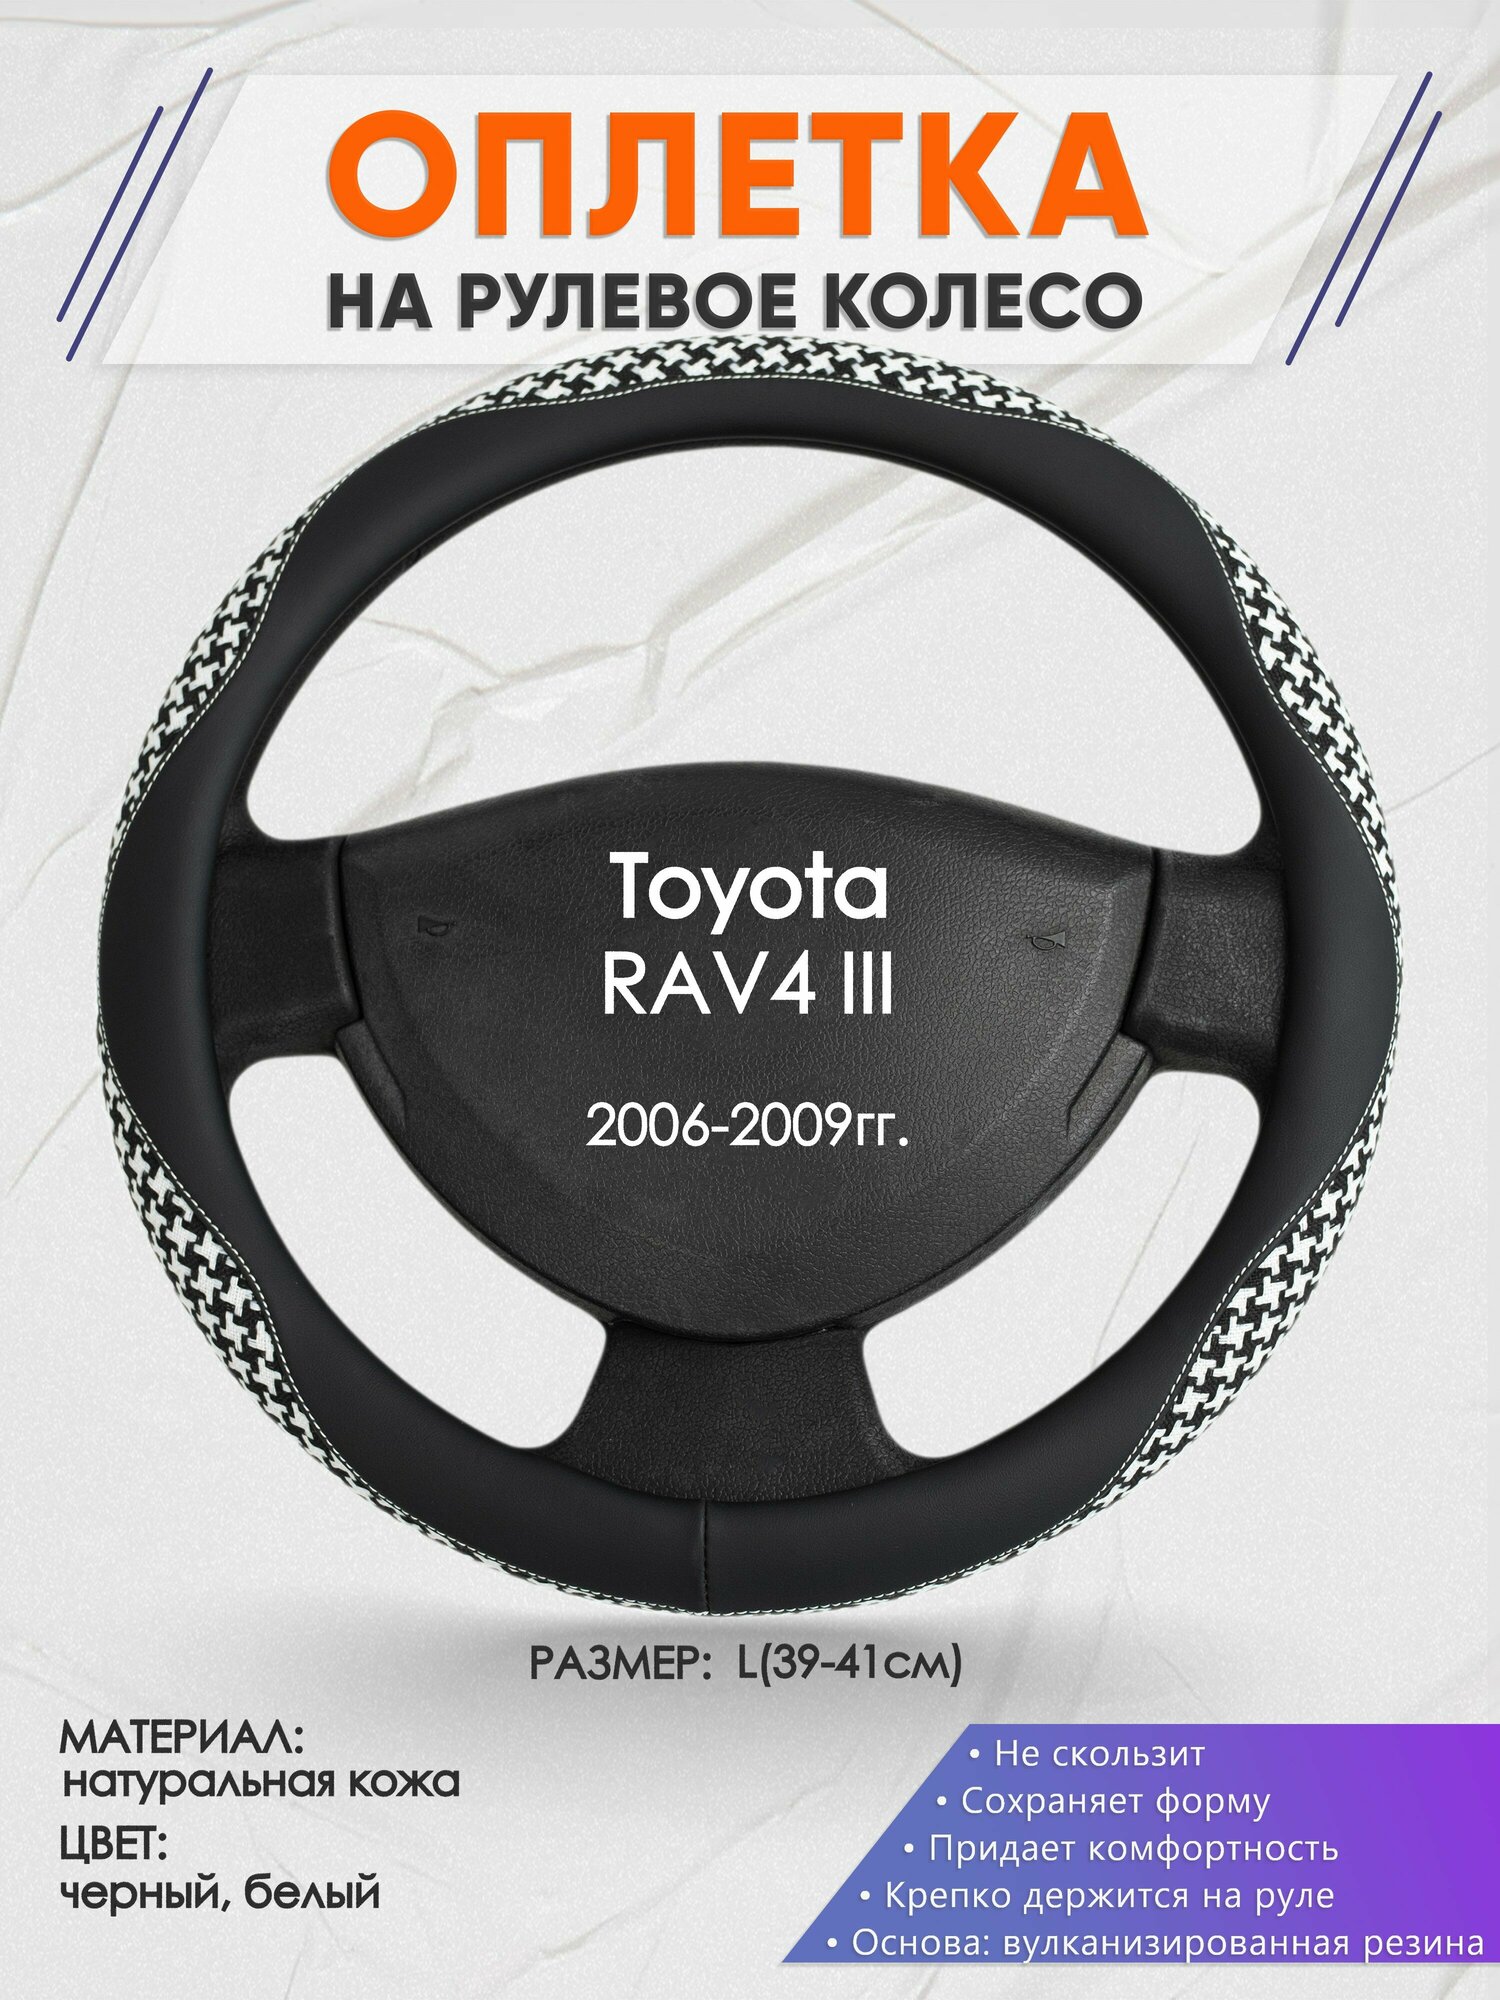 Оплетка на руль для Toyota RAV4 3(Тойота Рав 4) 2006-2009, L(39-41см), Натуральная кожа 21